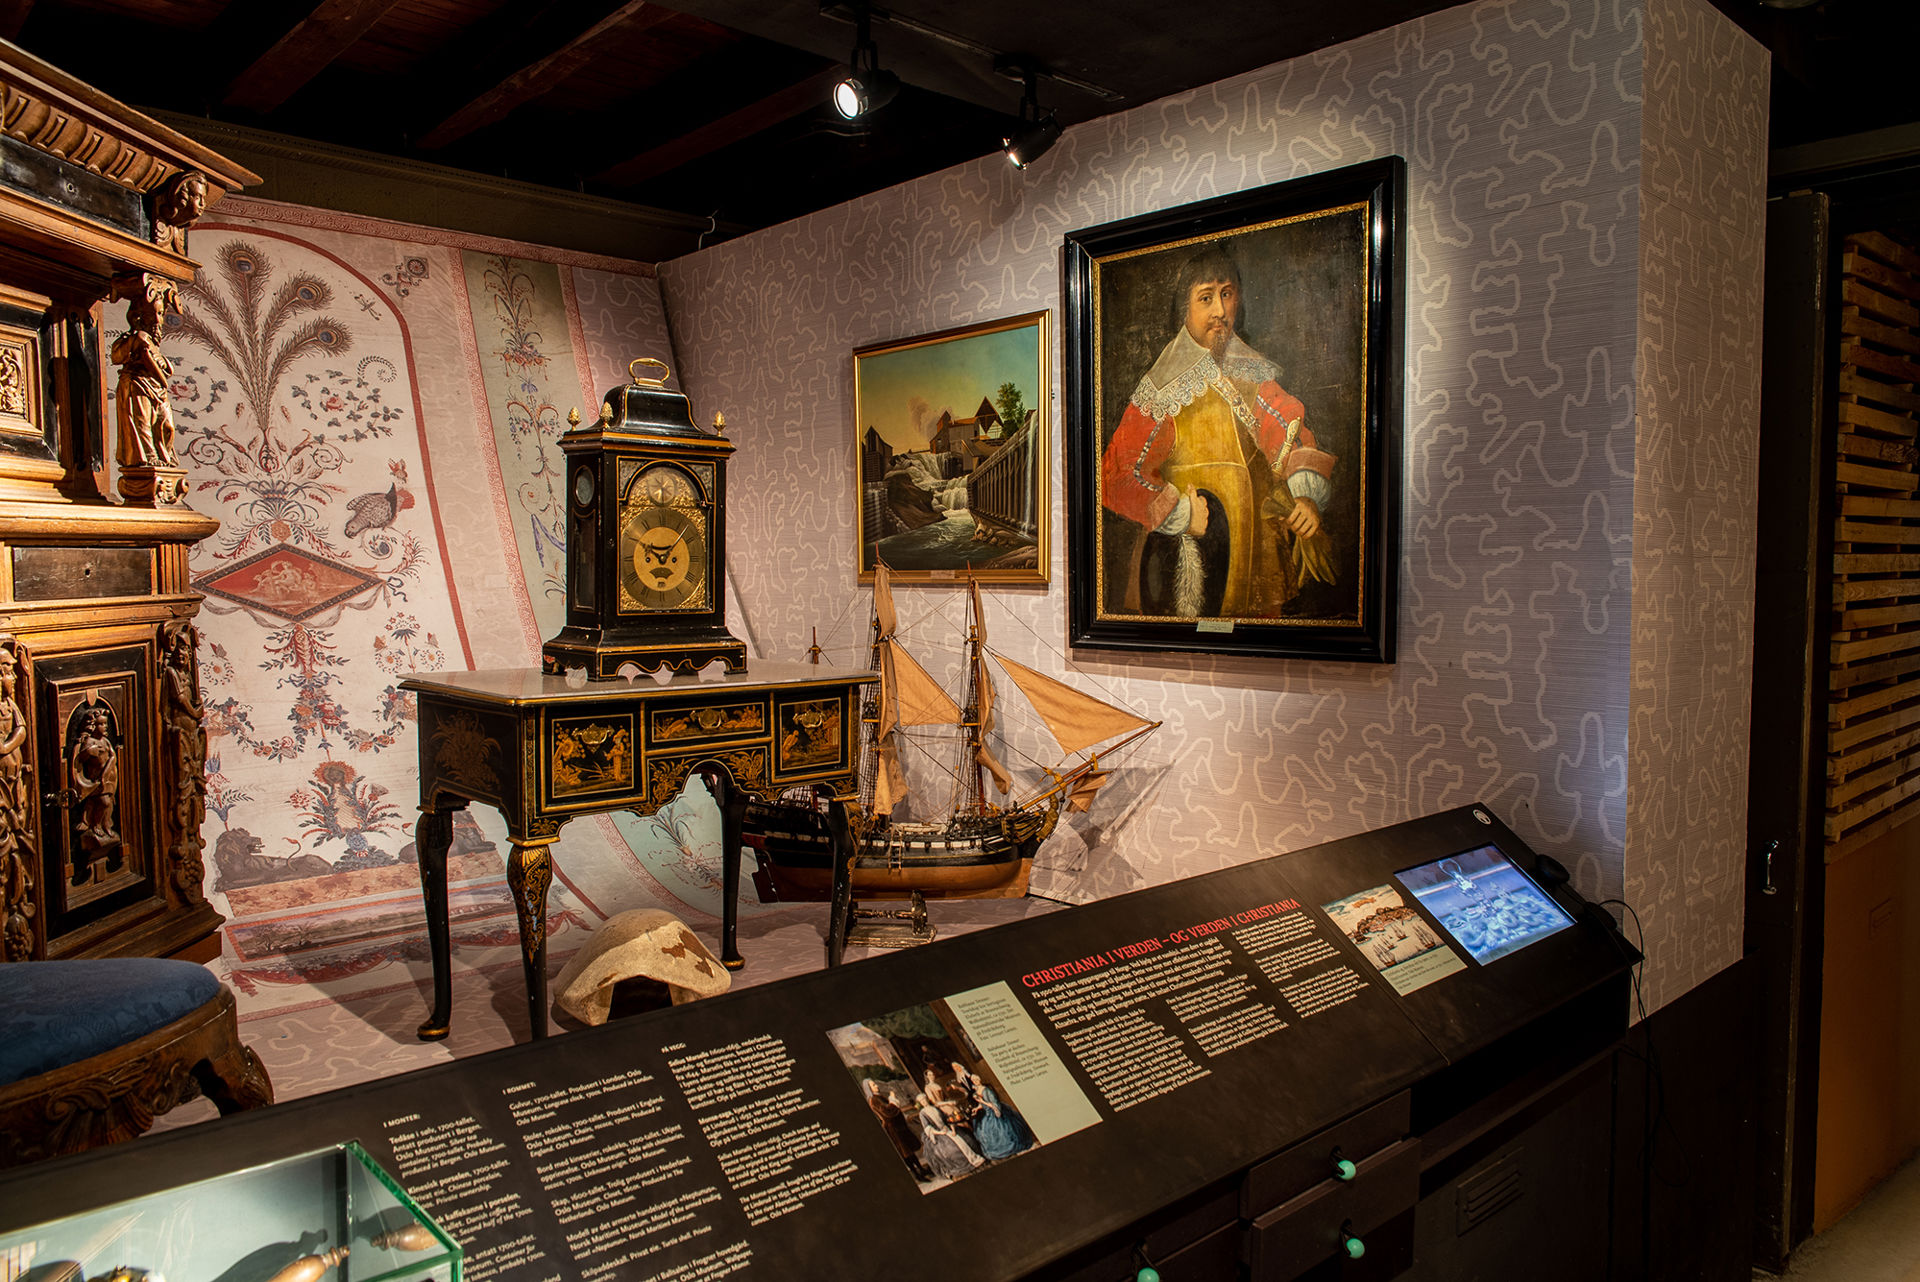 Mange utstillingsobjekter, blant annet maleri, skipsmodell, gammel klokke og et skilpaddeskall